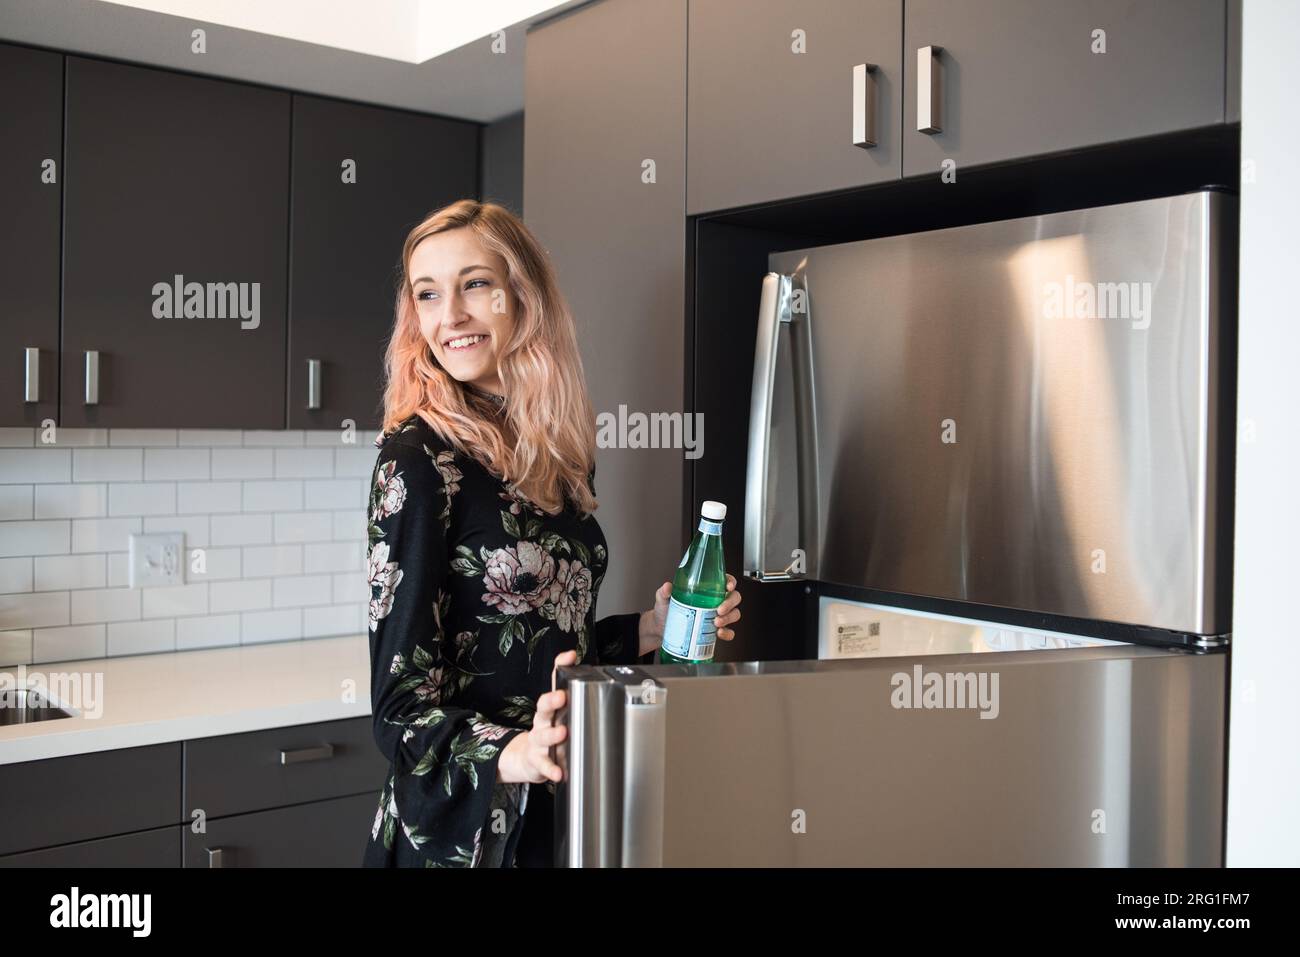 Femme heureuse attrapant boisson hors du réfrigérateur Banque D'Images